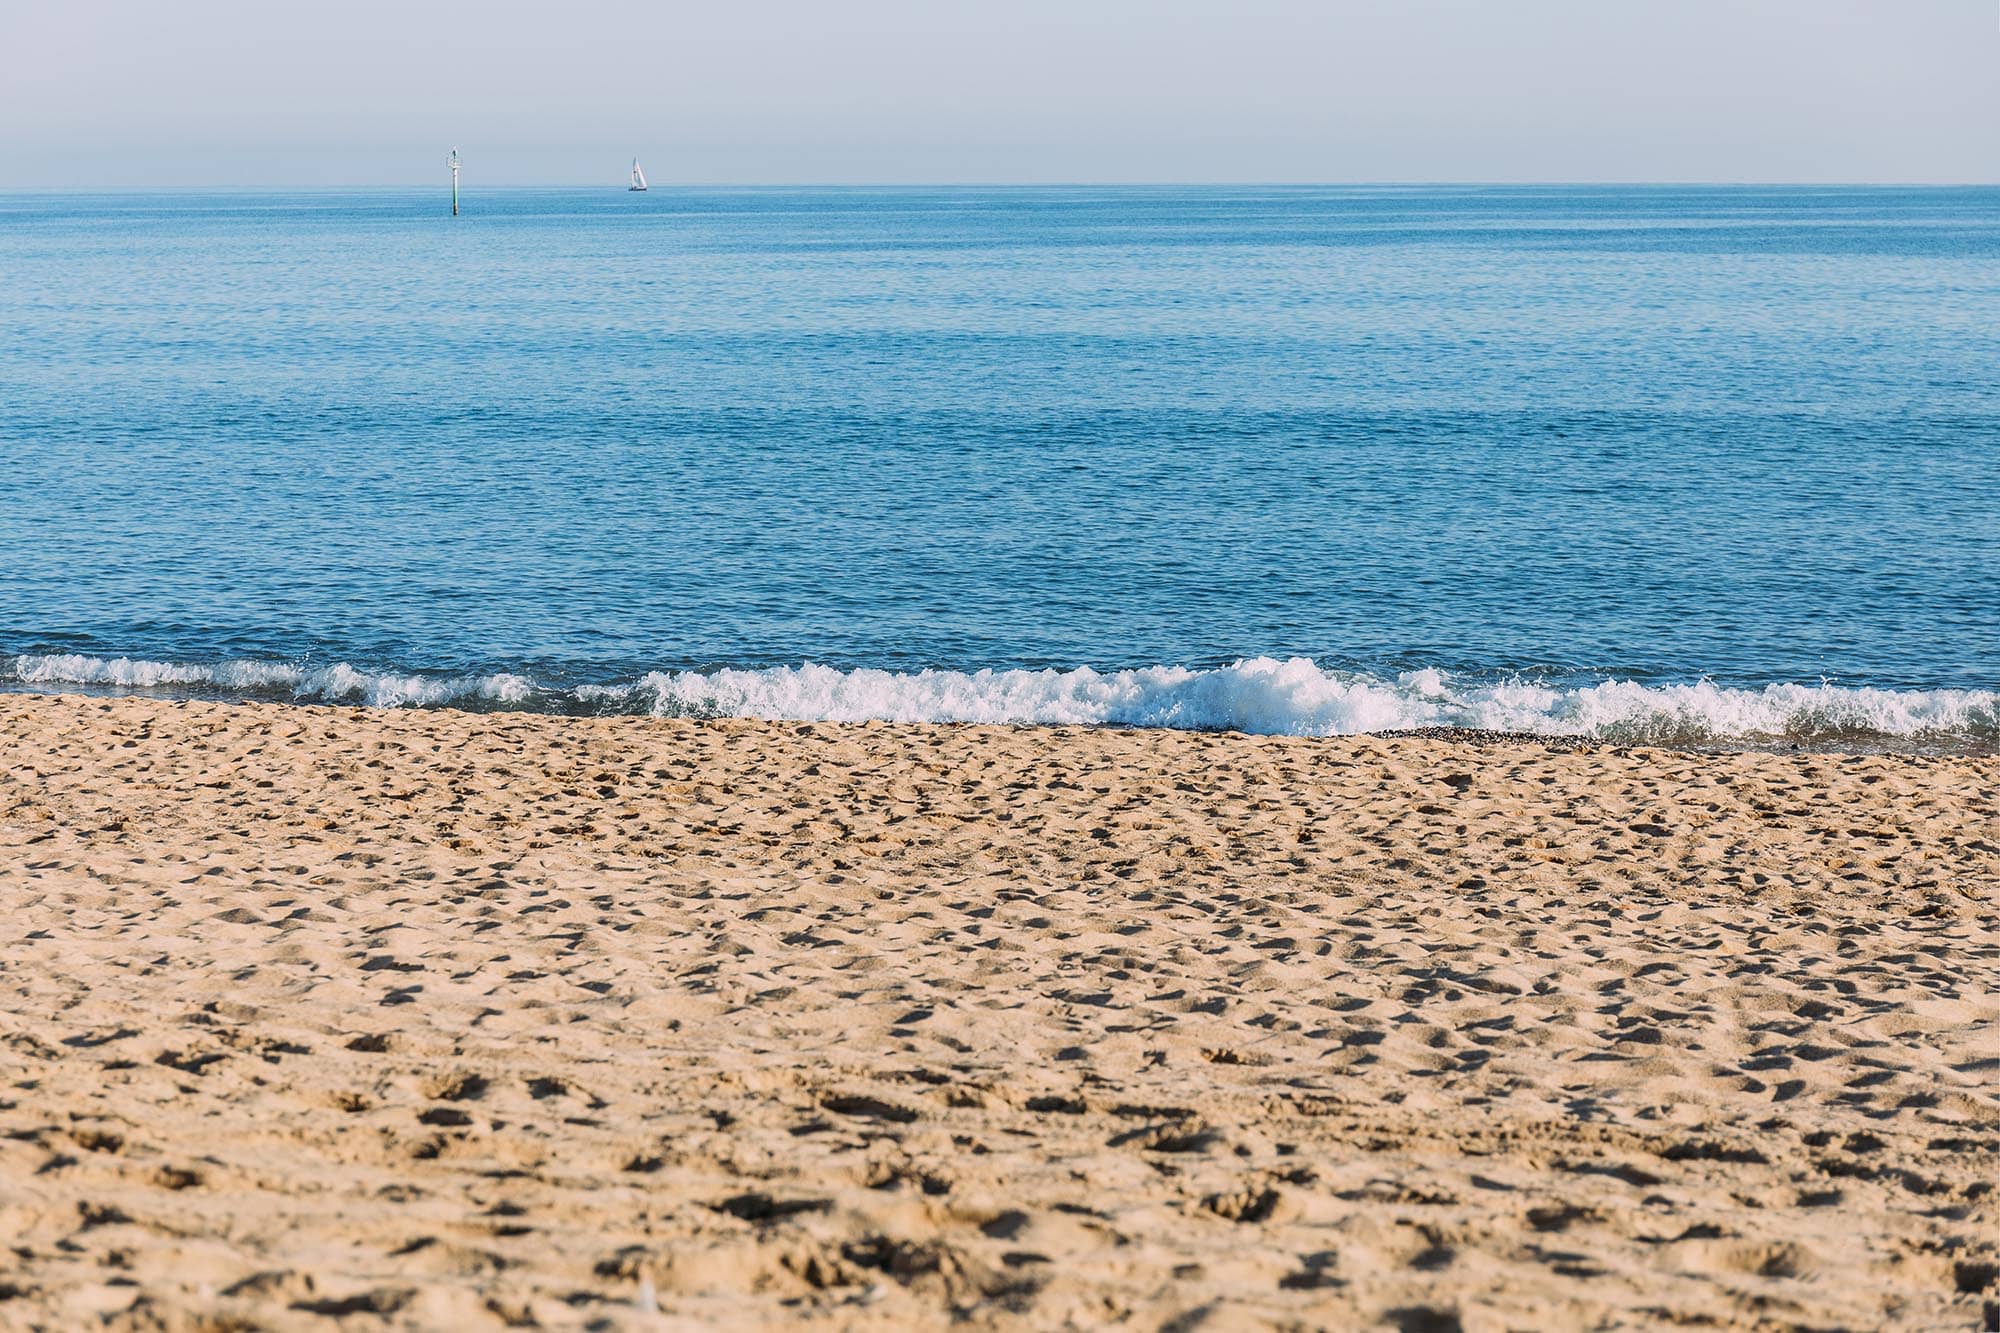 Les 8 meilleures plages de Barcelone pour profiter du soleil toute l'année, du divertissement et de tout le reste